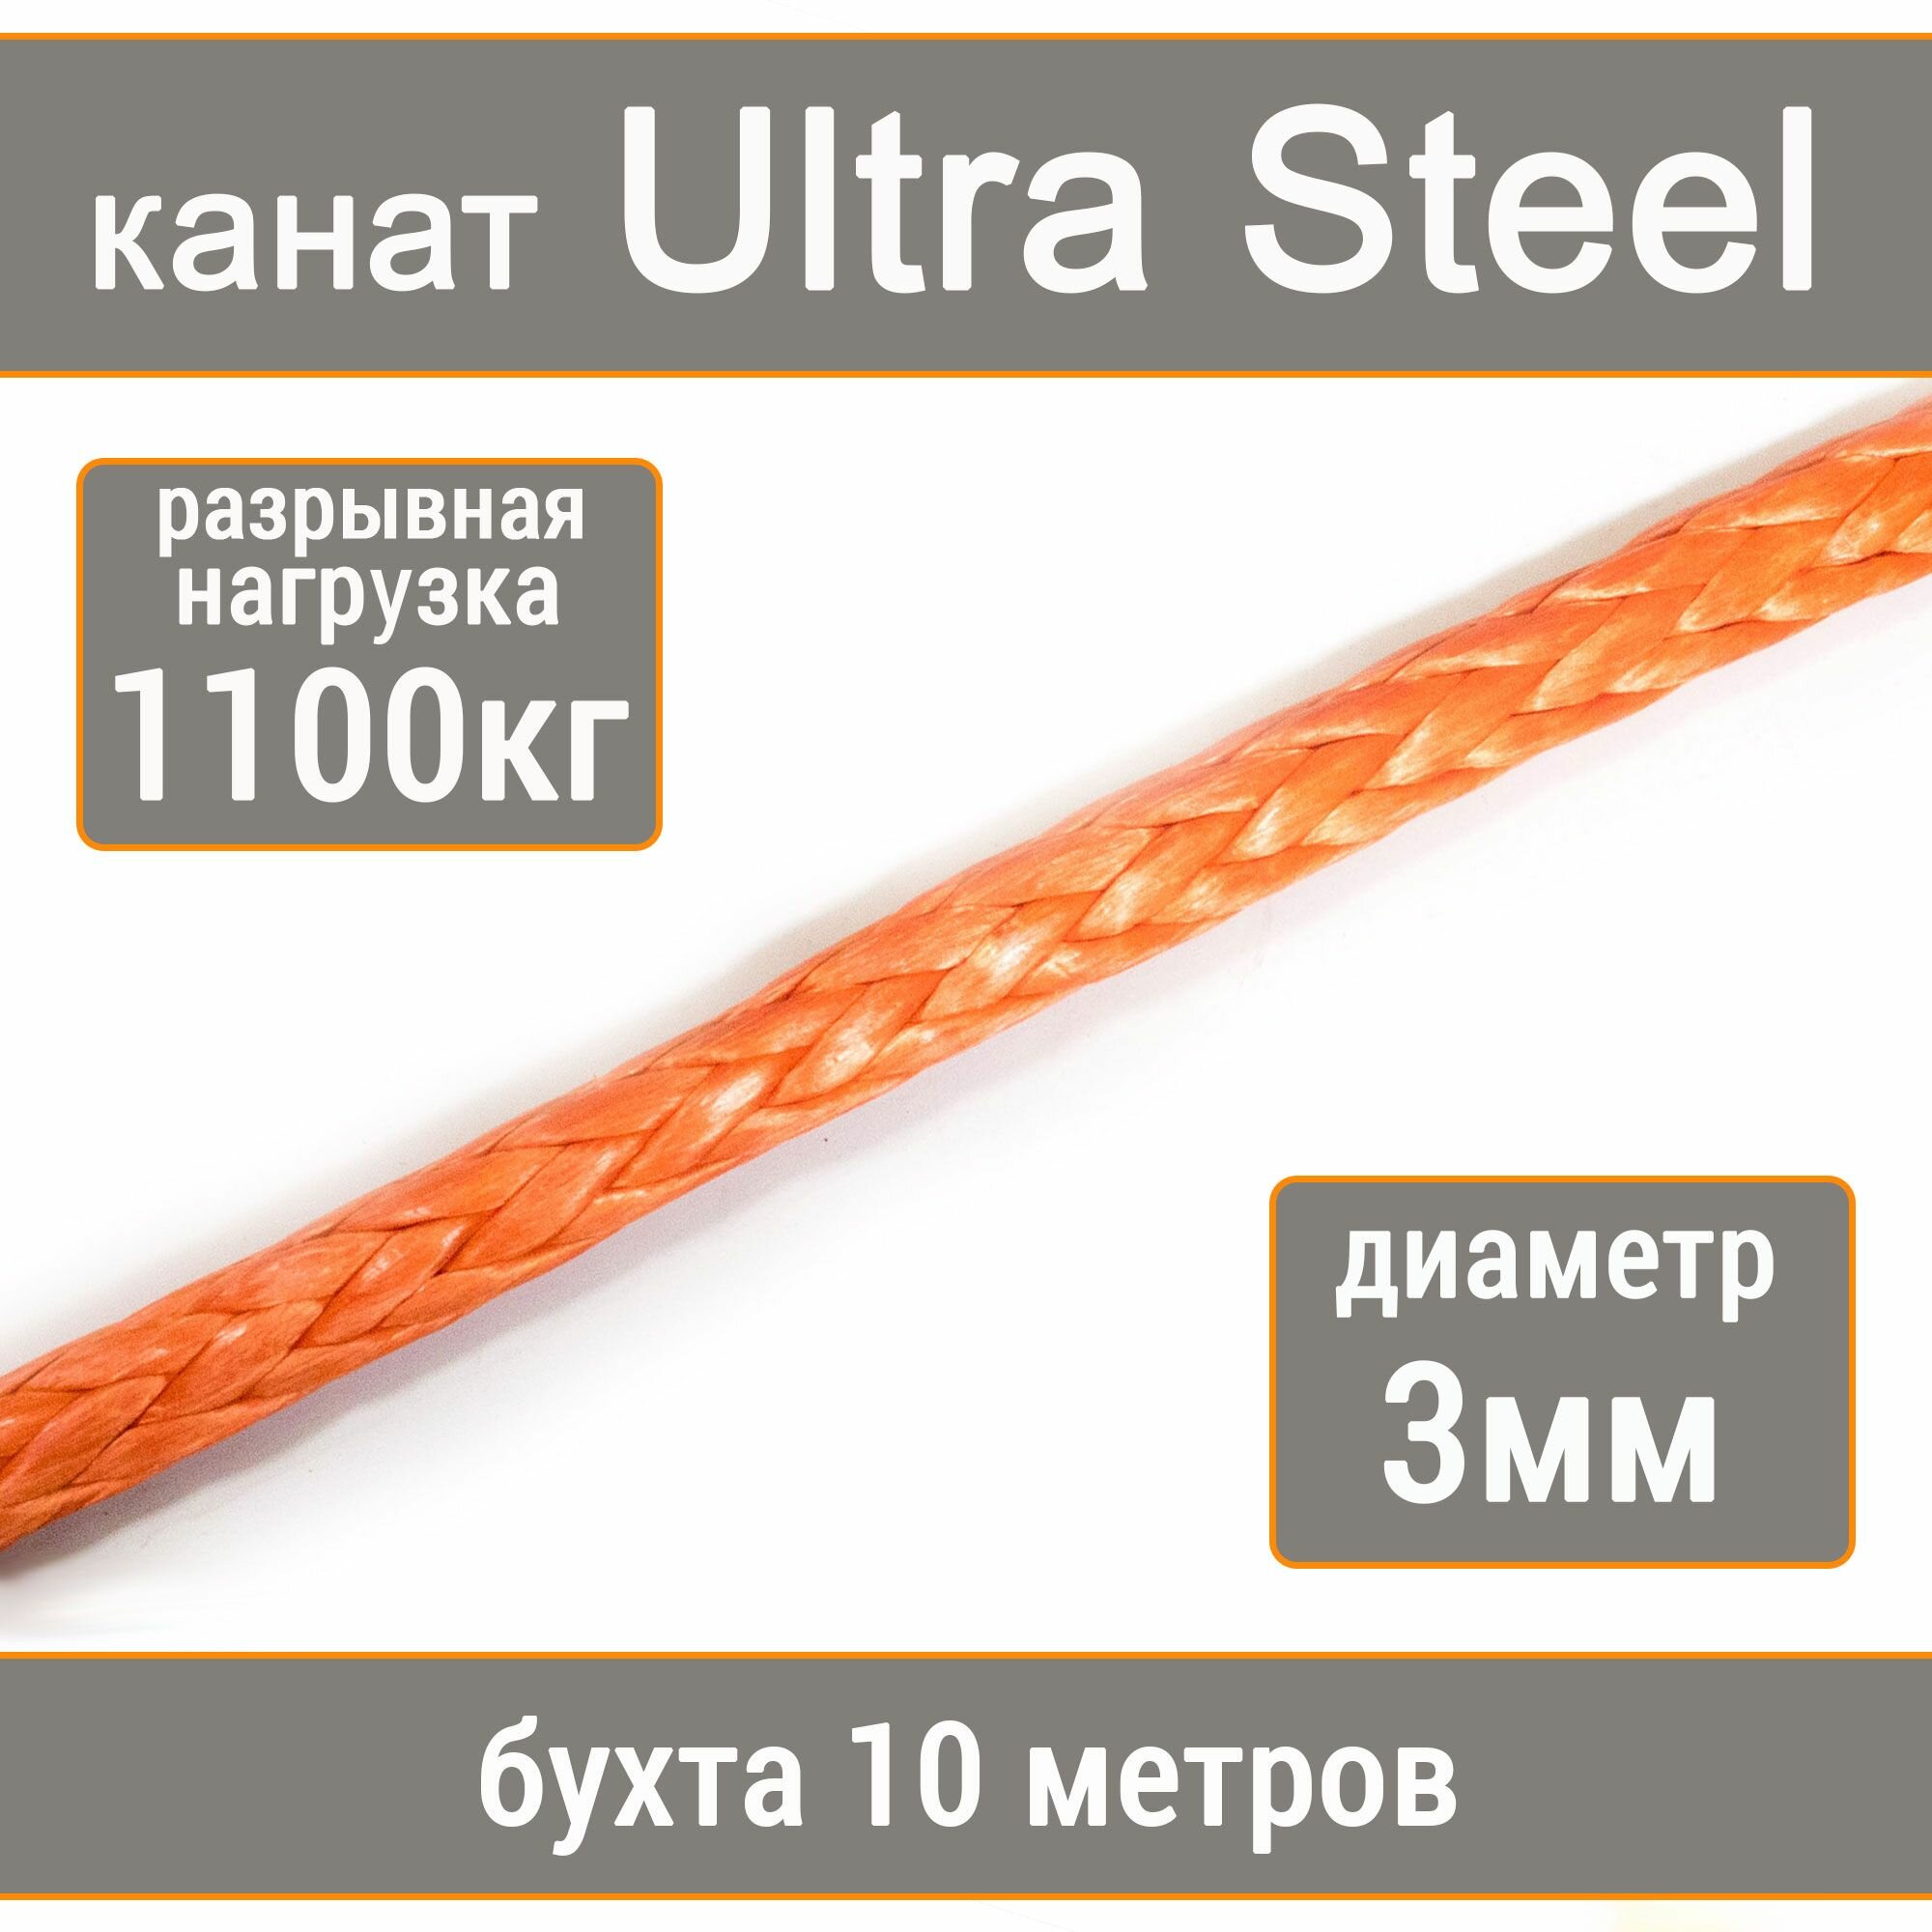 Высокопрочный синтетический канат UTX Ultra Steel 3мм р. н. не менее 1100кг из волокна UHMWPE, длина 10 метров